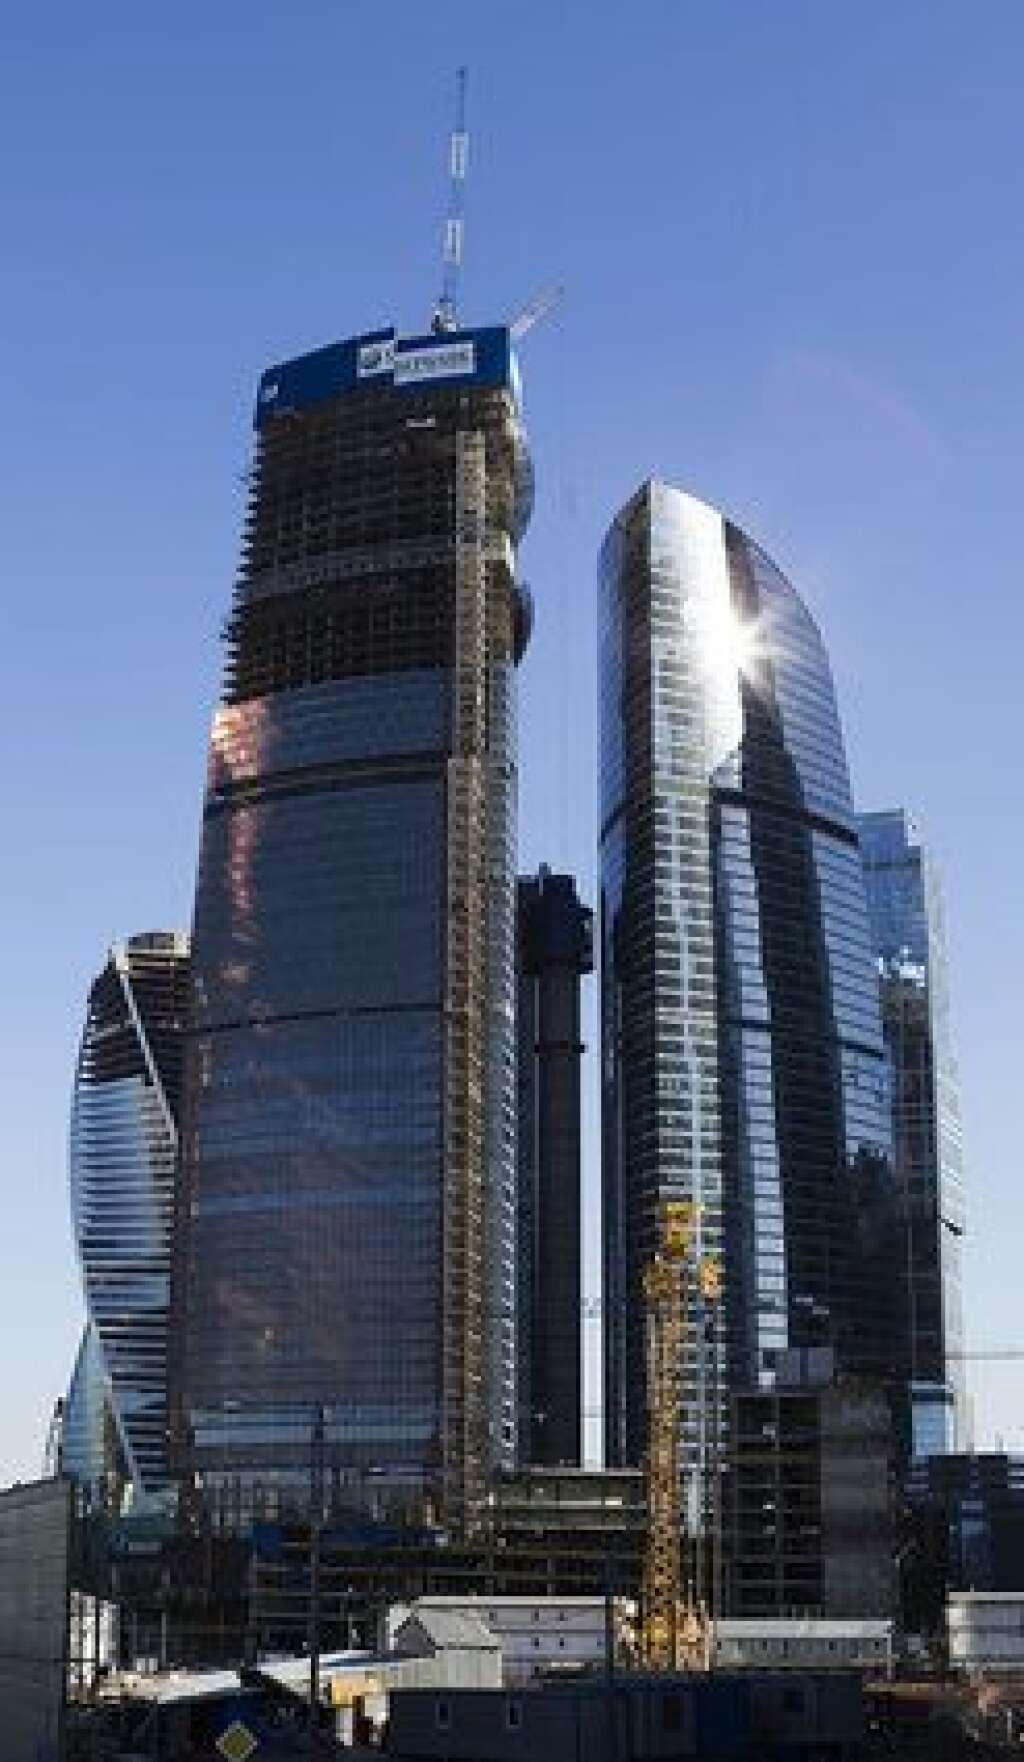 La Federation Tower à Moscou (Russie) - Après 12 années de travaux, la Federation Tower sera inaugurée dans l'année à Moscou. Située dans le quartier d'affaires de la capitale russe, ce double gratte-ciel de bureaux culminera à 360 mètres (hors pointe), pour devenir le plus haut d'Europe.